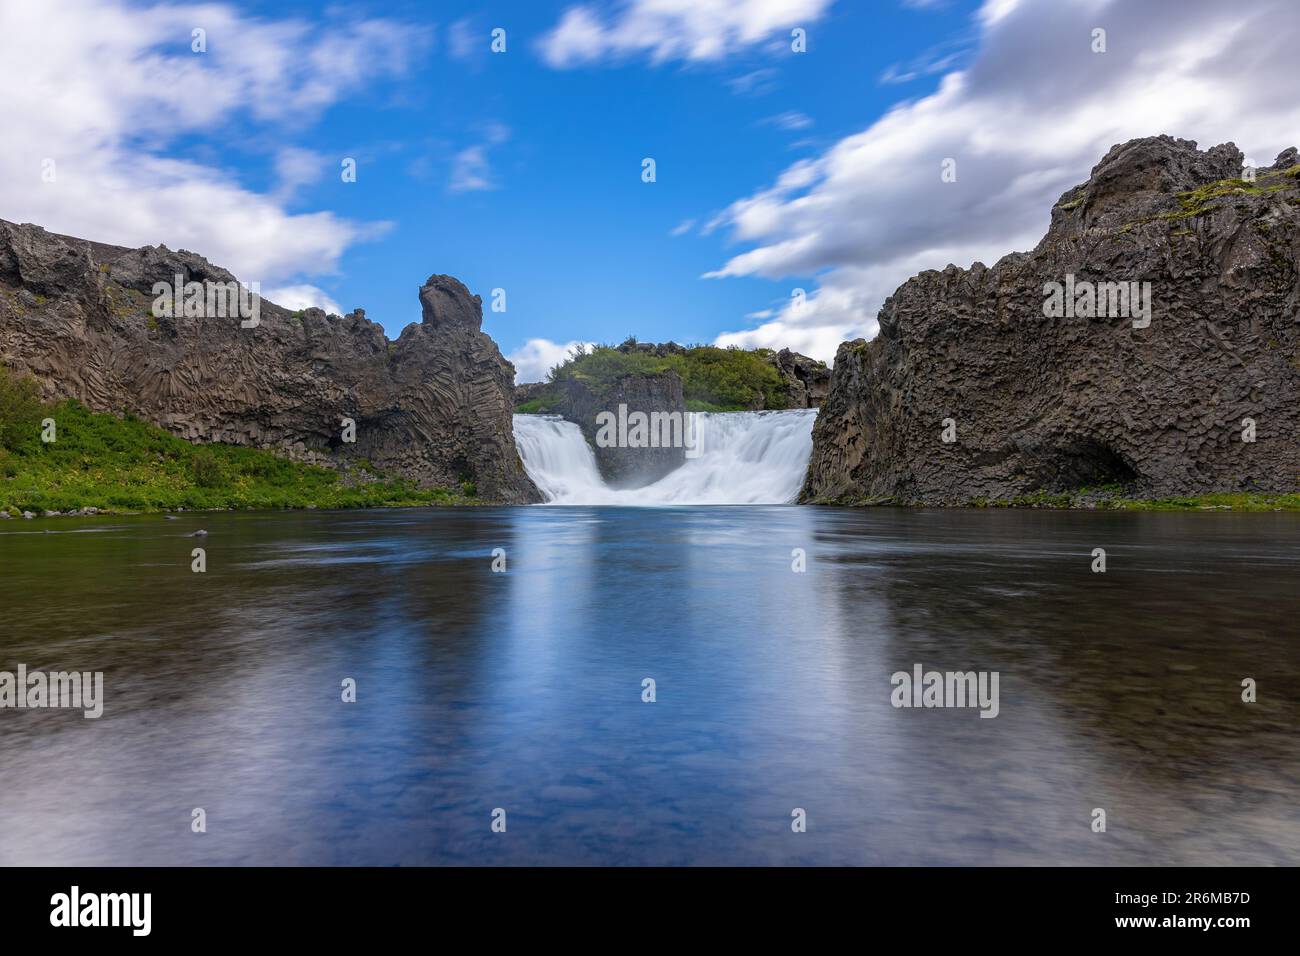 Un paesaggio pittoresco caratterizzato da un fiume che scorre attraverso una gola con acque incontaminate e tranquille Foto Stock